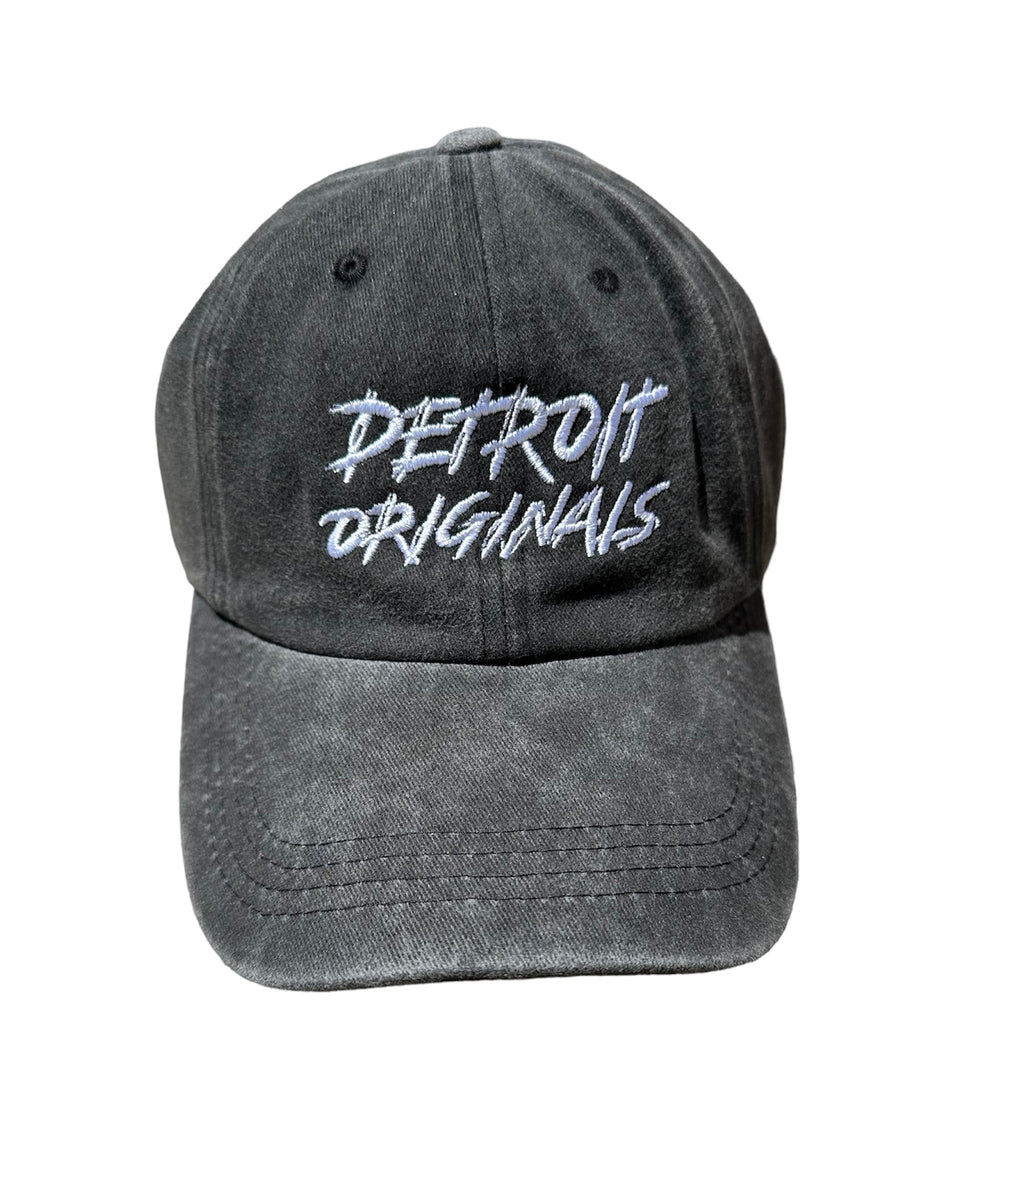 Detroit Originals Logo Cap